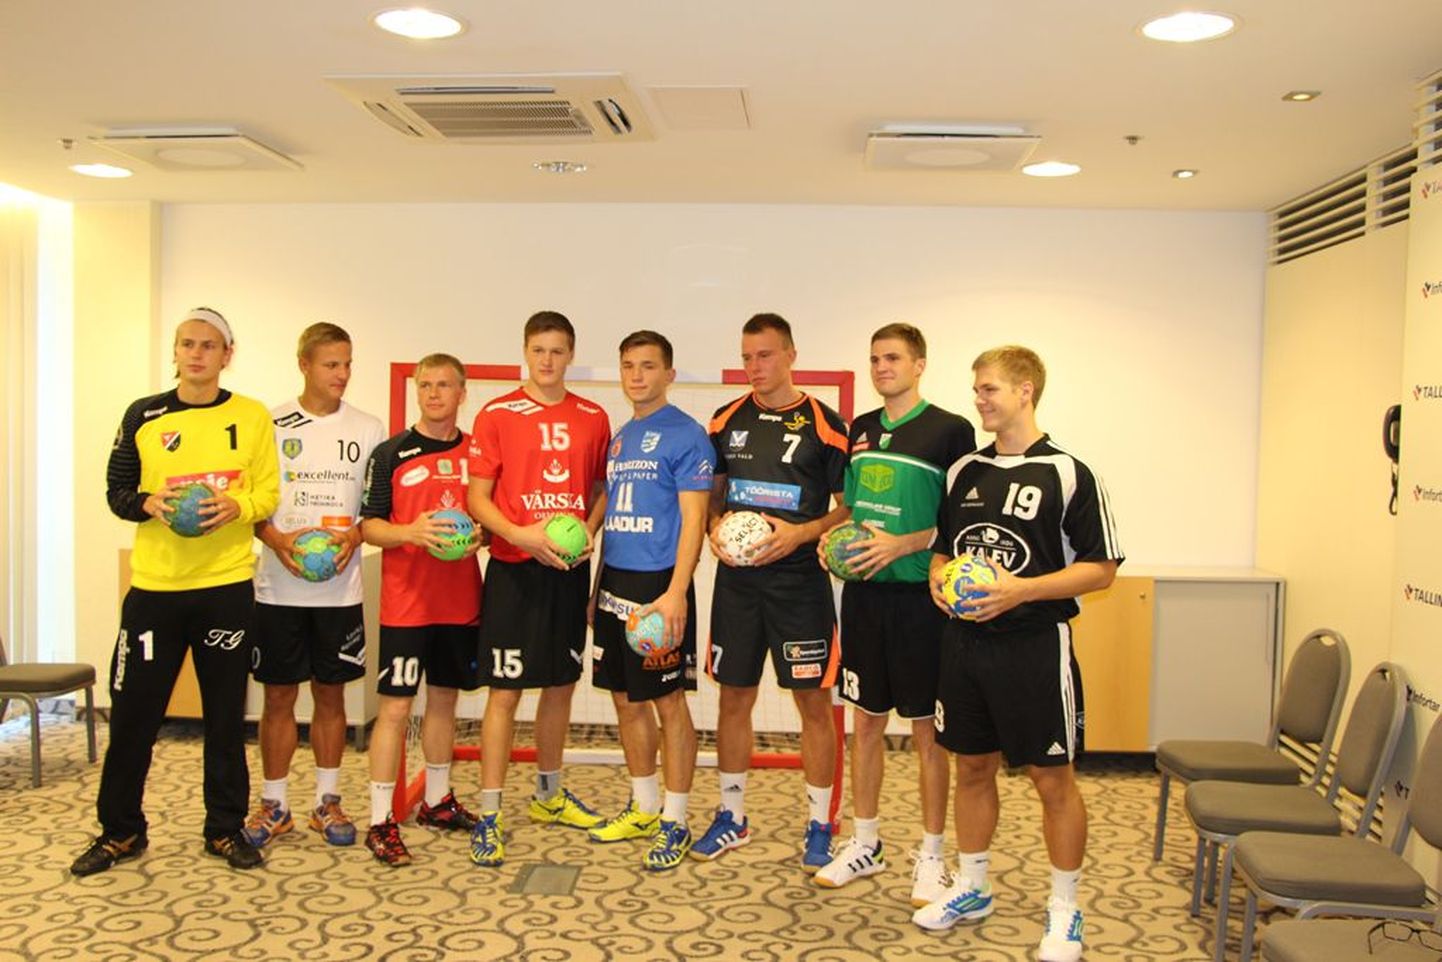 2014. aasta Eesti käsipalli meistriliigas teeb kaasa kaheksa meeskonda, kes tutvustasid end teisipäeval peetud pressikonverentsil.